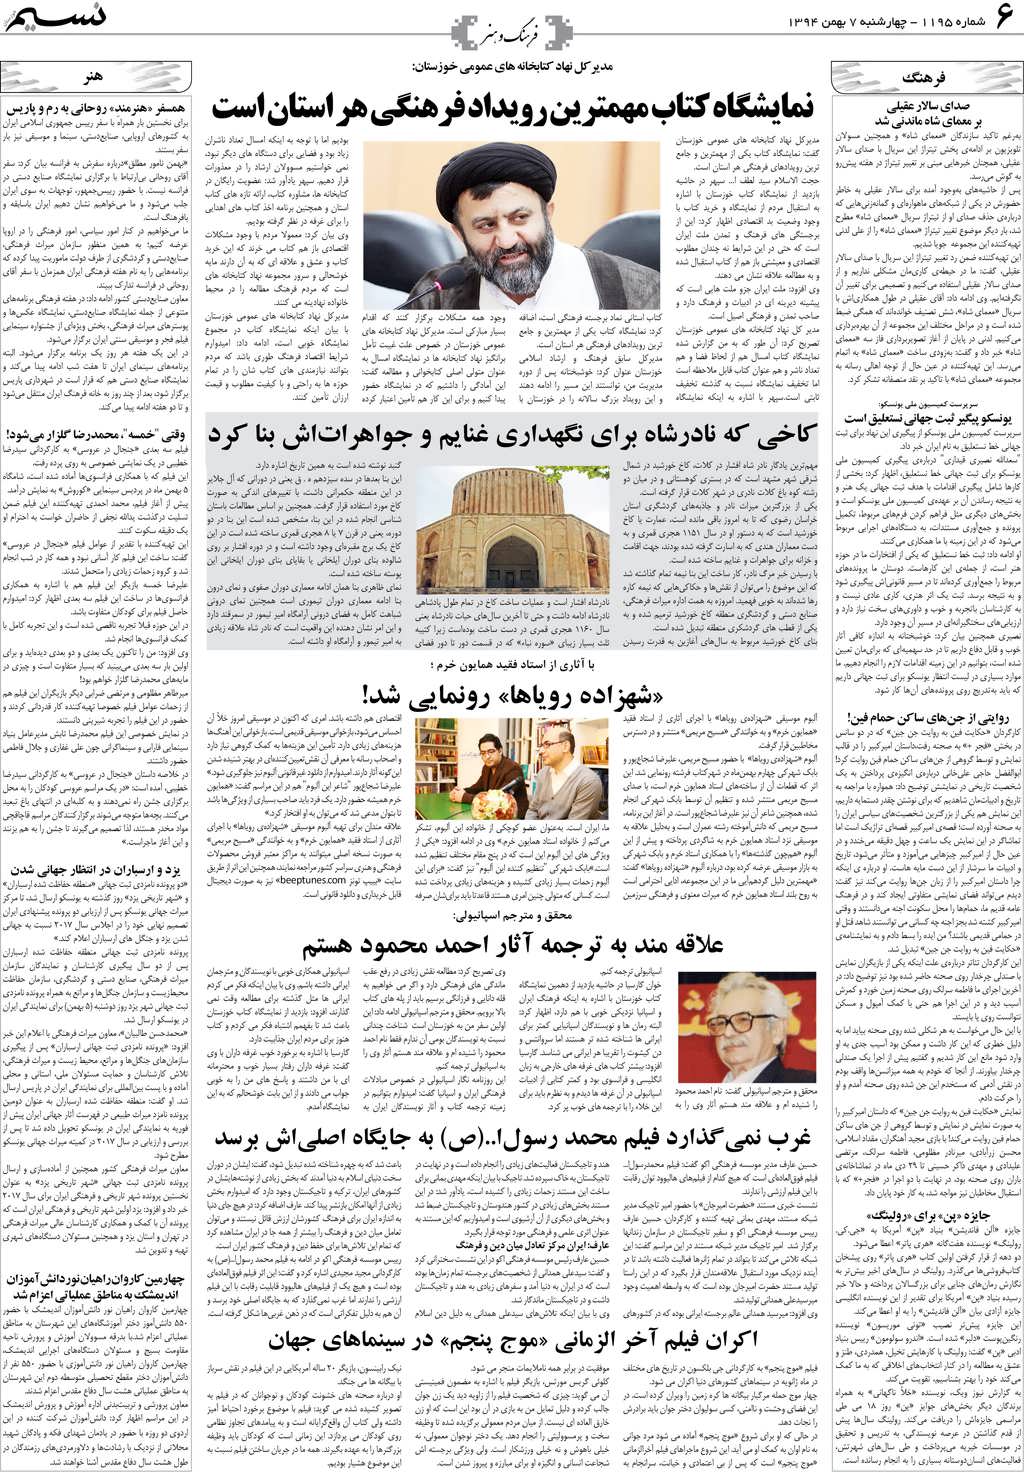 صفحه فرهنگ و هنر روزنامه نسیم شماره 1195